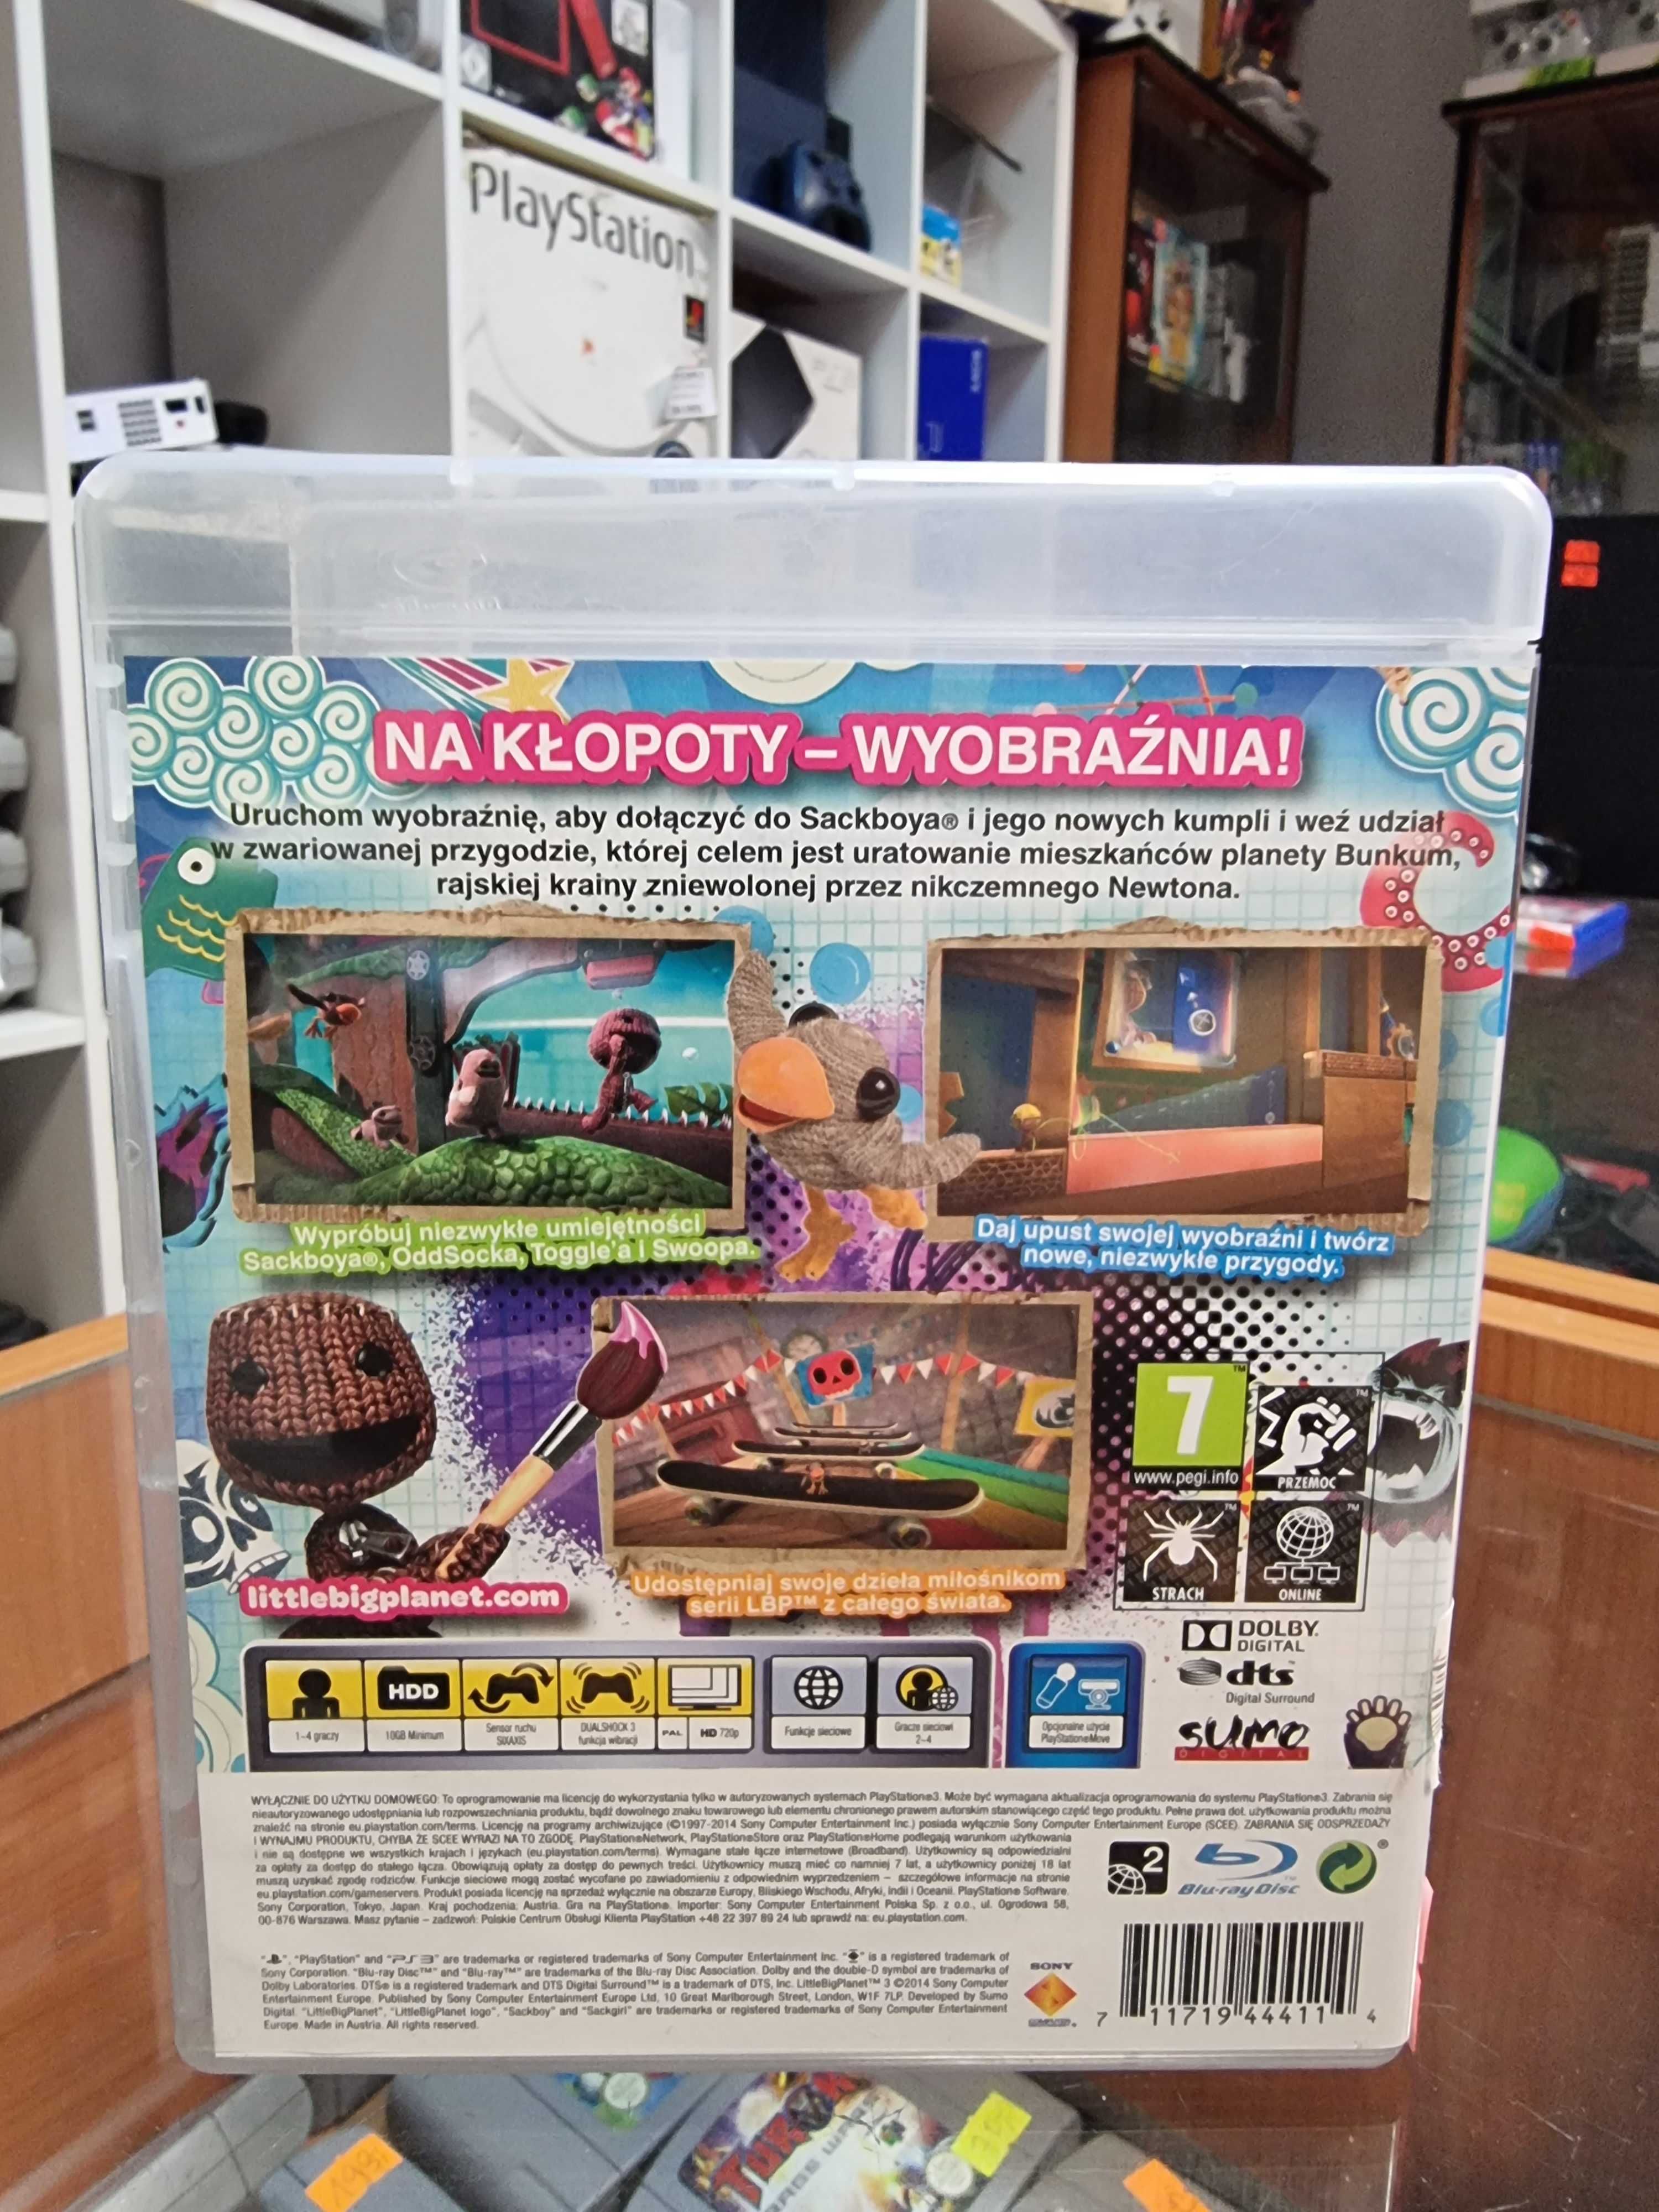 LittleBigPlanet 3 PS3, Sklep Wysyłka Wymiana